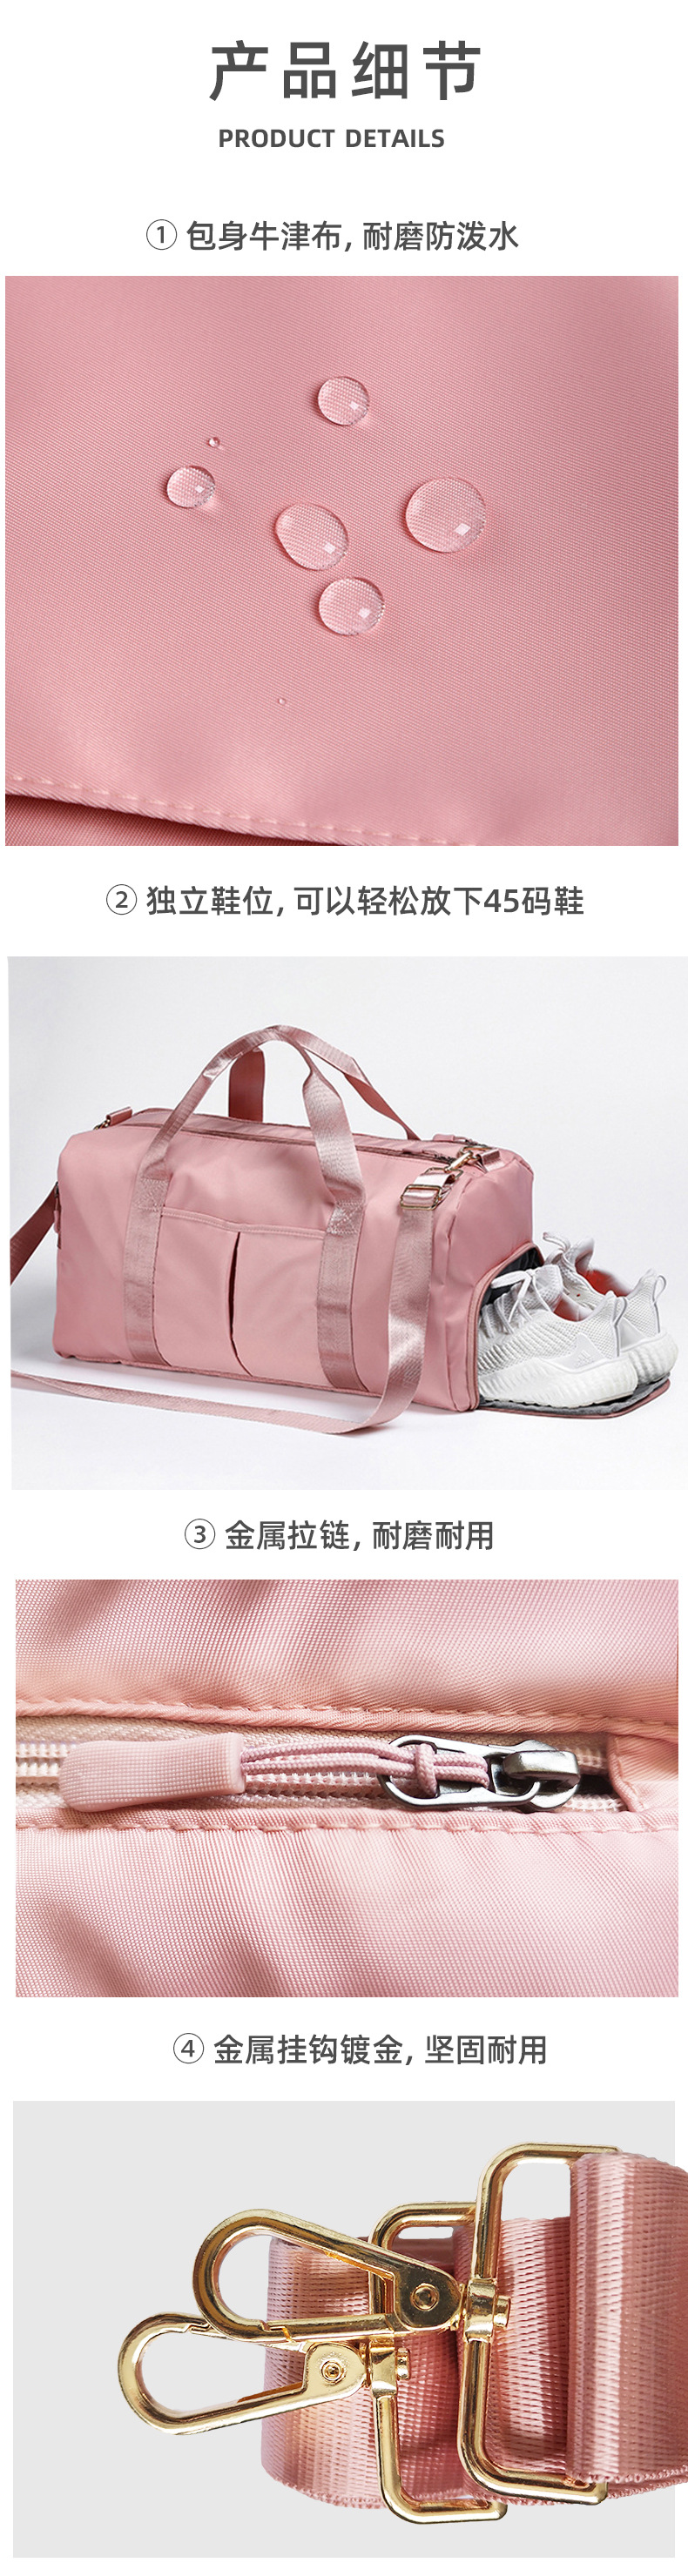 粉红健身包-详情页_06.jpg